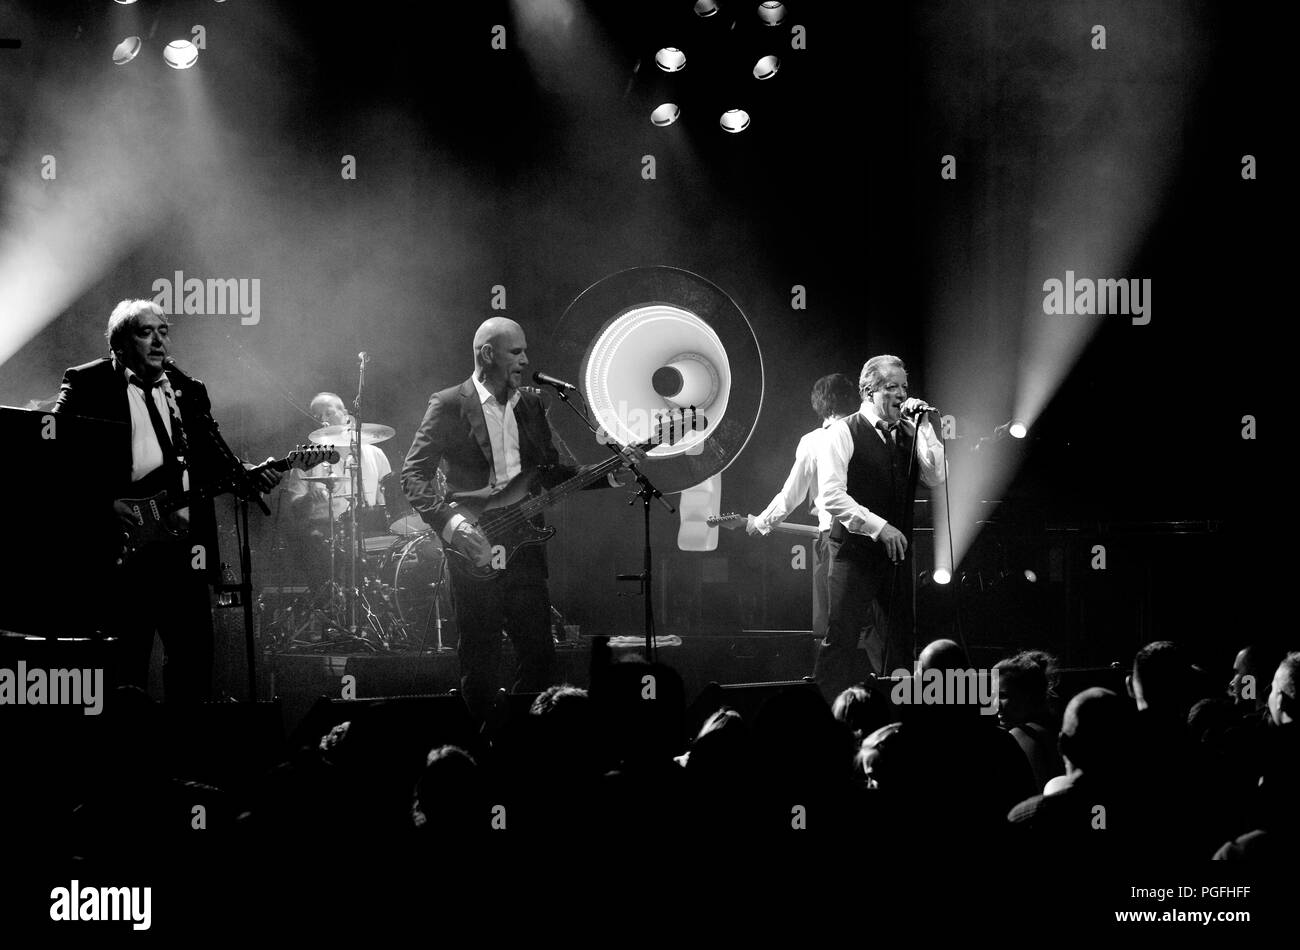 Belgian rock band De Kreuners in concert at Het Depot in Leuven (Belgium, 06/05/2010) Stock Photo